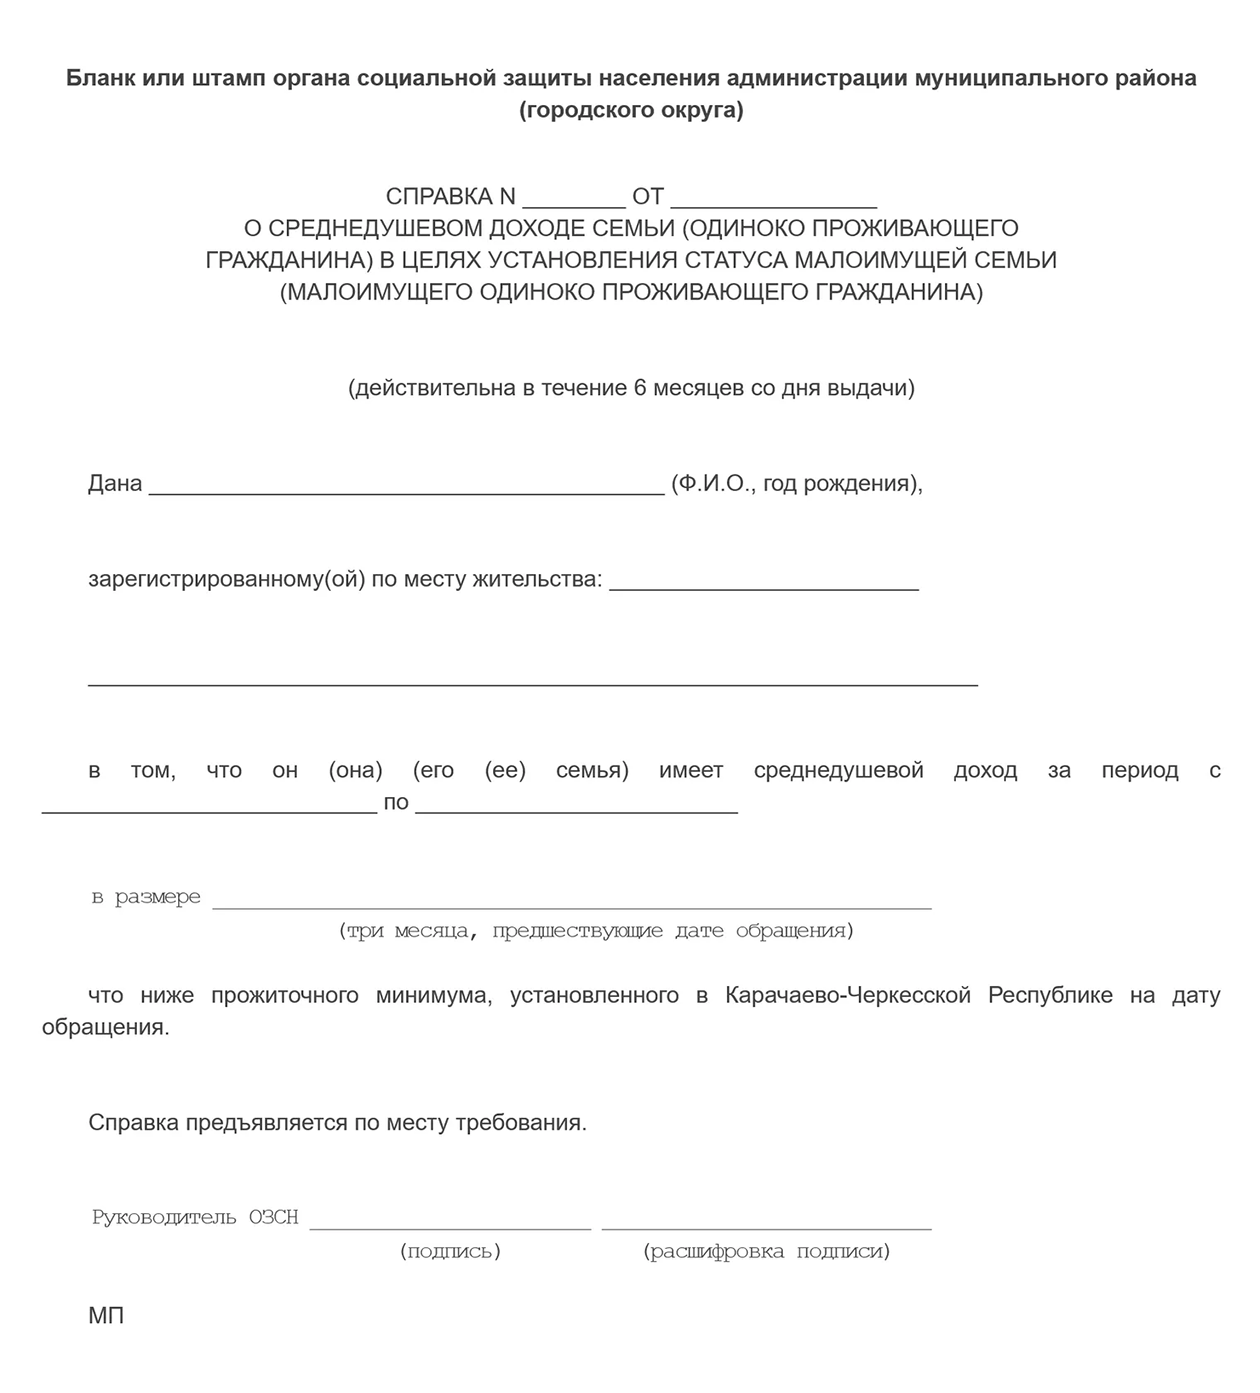 В каждом регионе своя форма справки. Например, такой документ выдают в Карачаево-Черкесской Республике. Источник: docs.cntd.ru